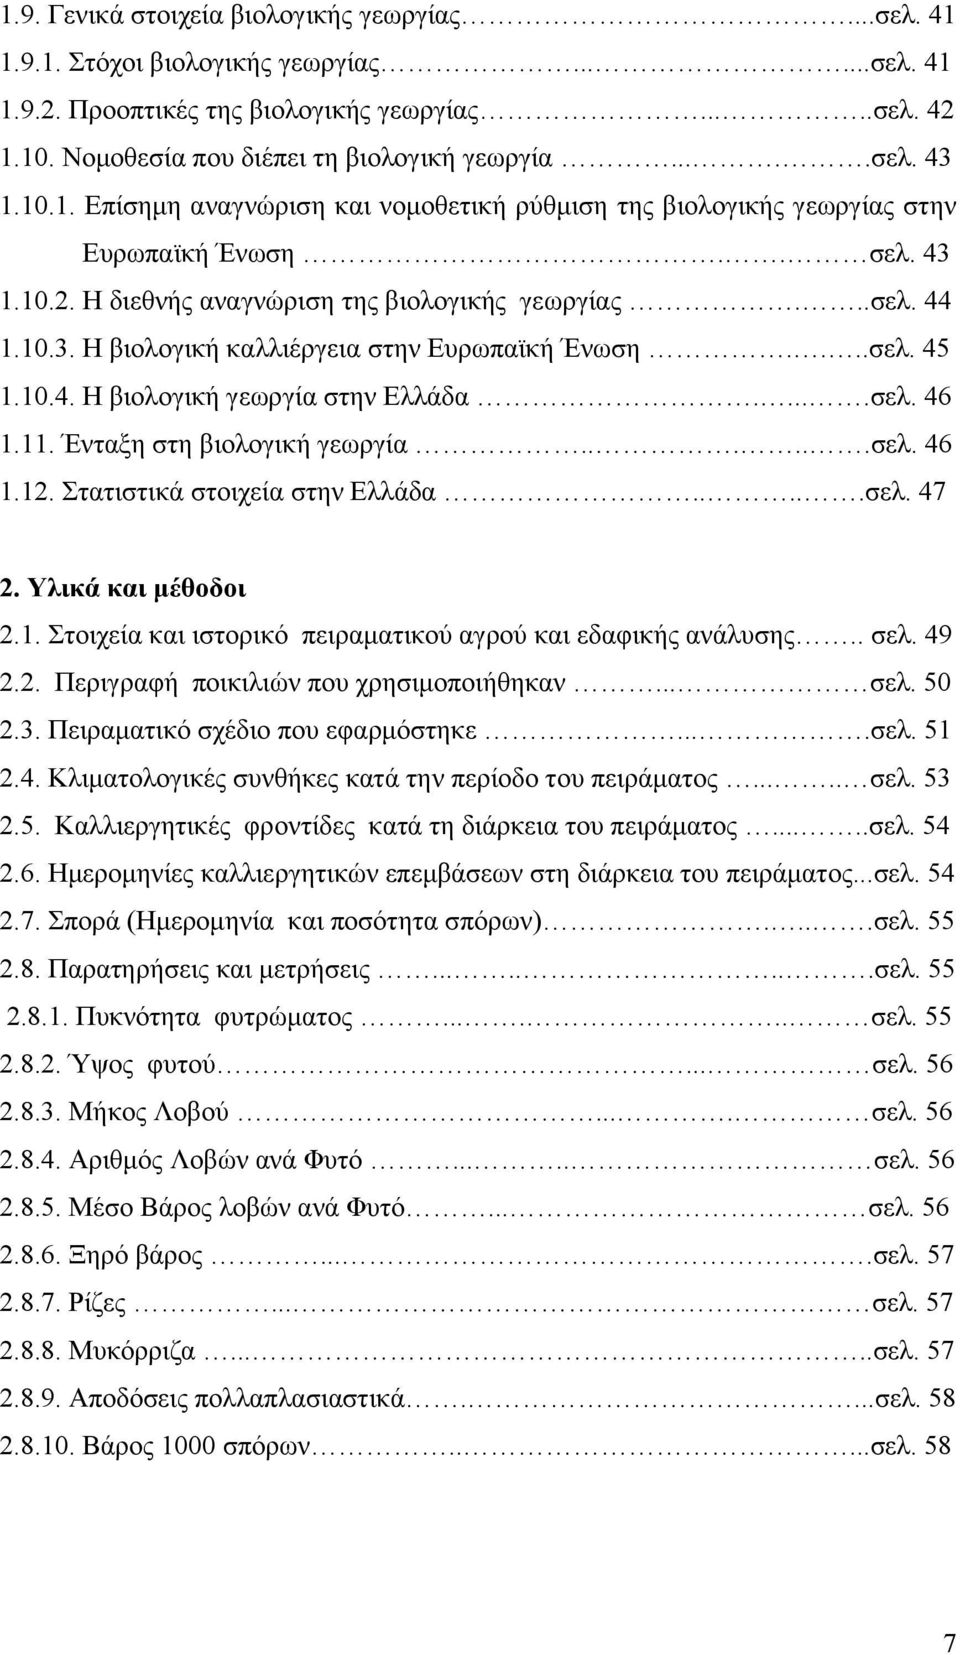 ...σελ. 45 1.10.4. H βιολογική γεωργία στην Ελλάδα.....σελ. 46 1.11. Ένταξη στη βιολογική γεωργία......σελ. 46 1.12. Στατιστικά στοιχεία στην Ελλάδα.....σελ. 47 2. Υλικά και μέθοδοι 2.1. Στοιχεία και ιστορικό πειραματικού αγρού και εδαφικής ανάλυσης.